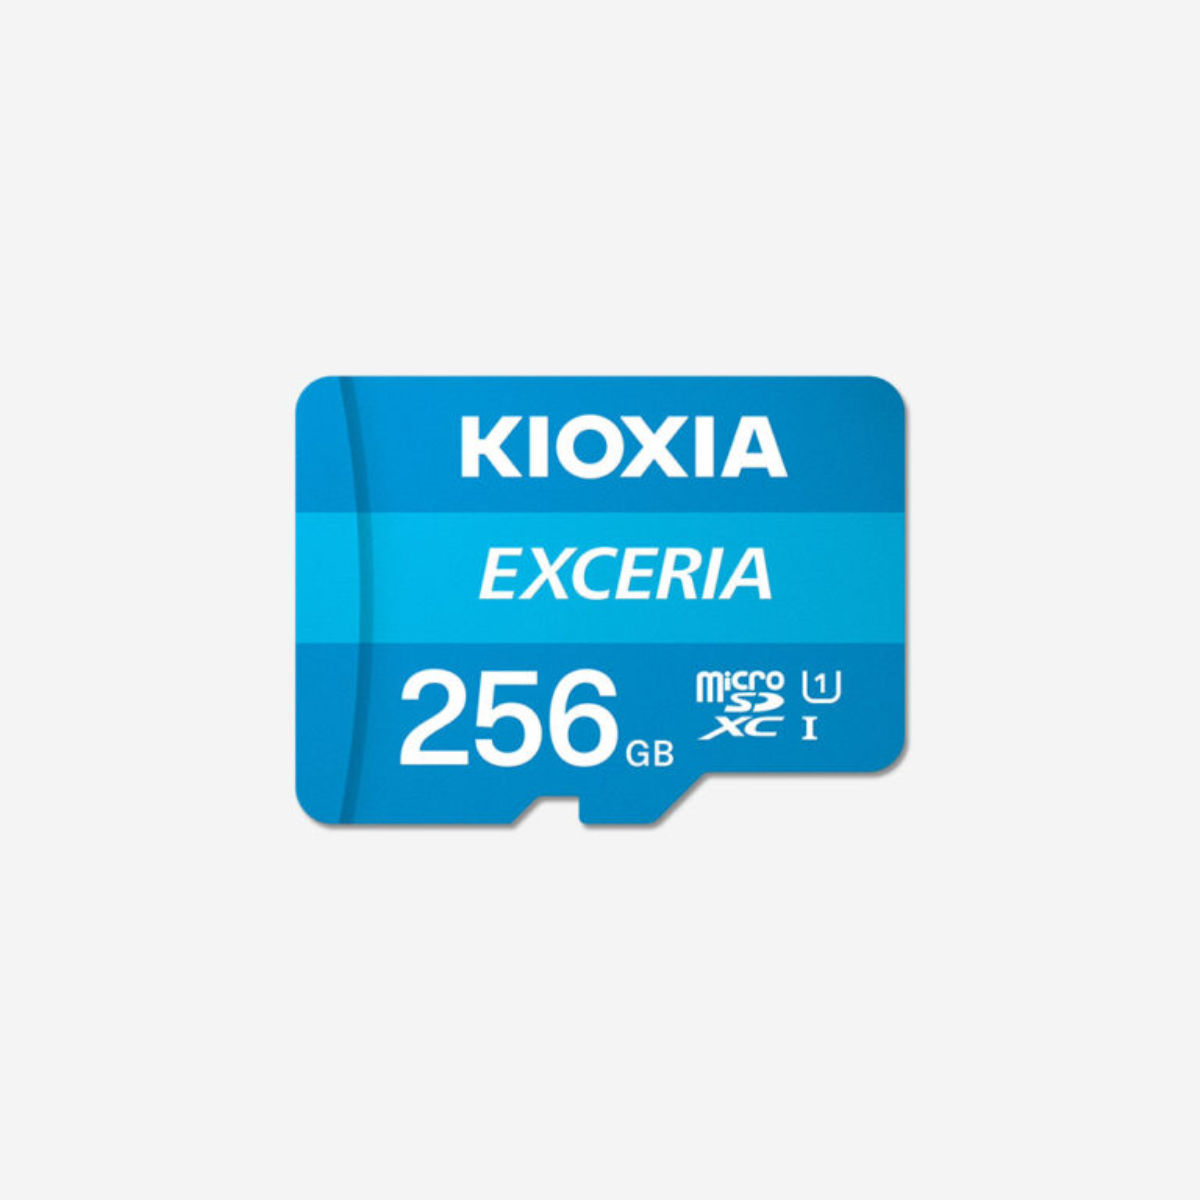 室外 東芝エルイーソリューション microSD EXCERIA高耐久 256G送料込み